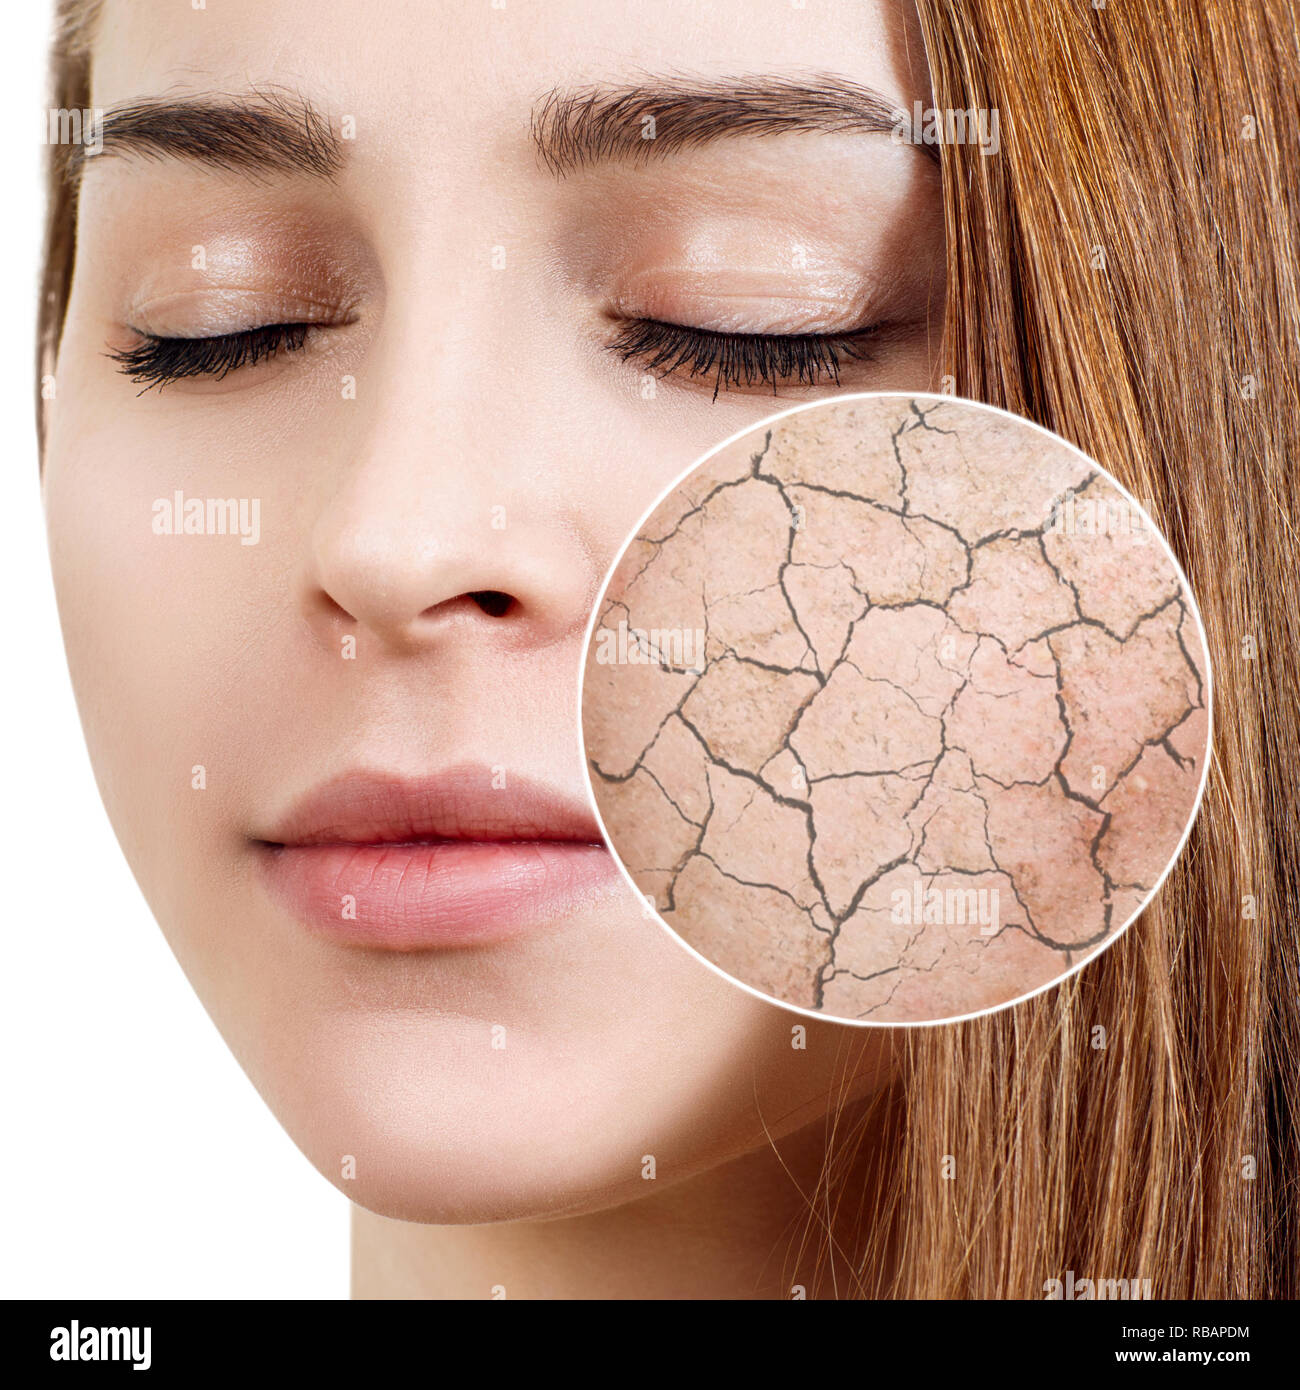 Cercle zoom montre la peau du visage sèche avant de mouiller. Concept de soins de la peau. Banque D'Images